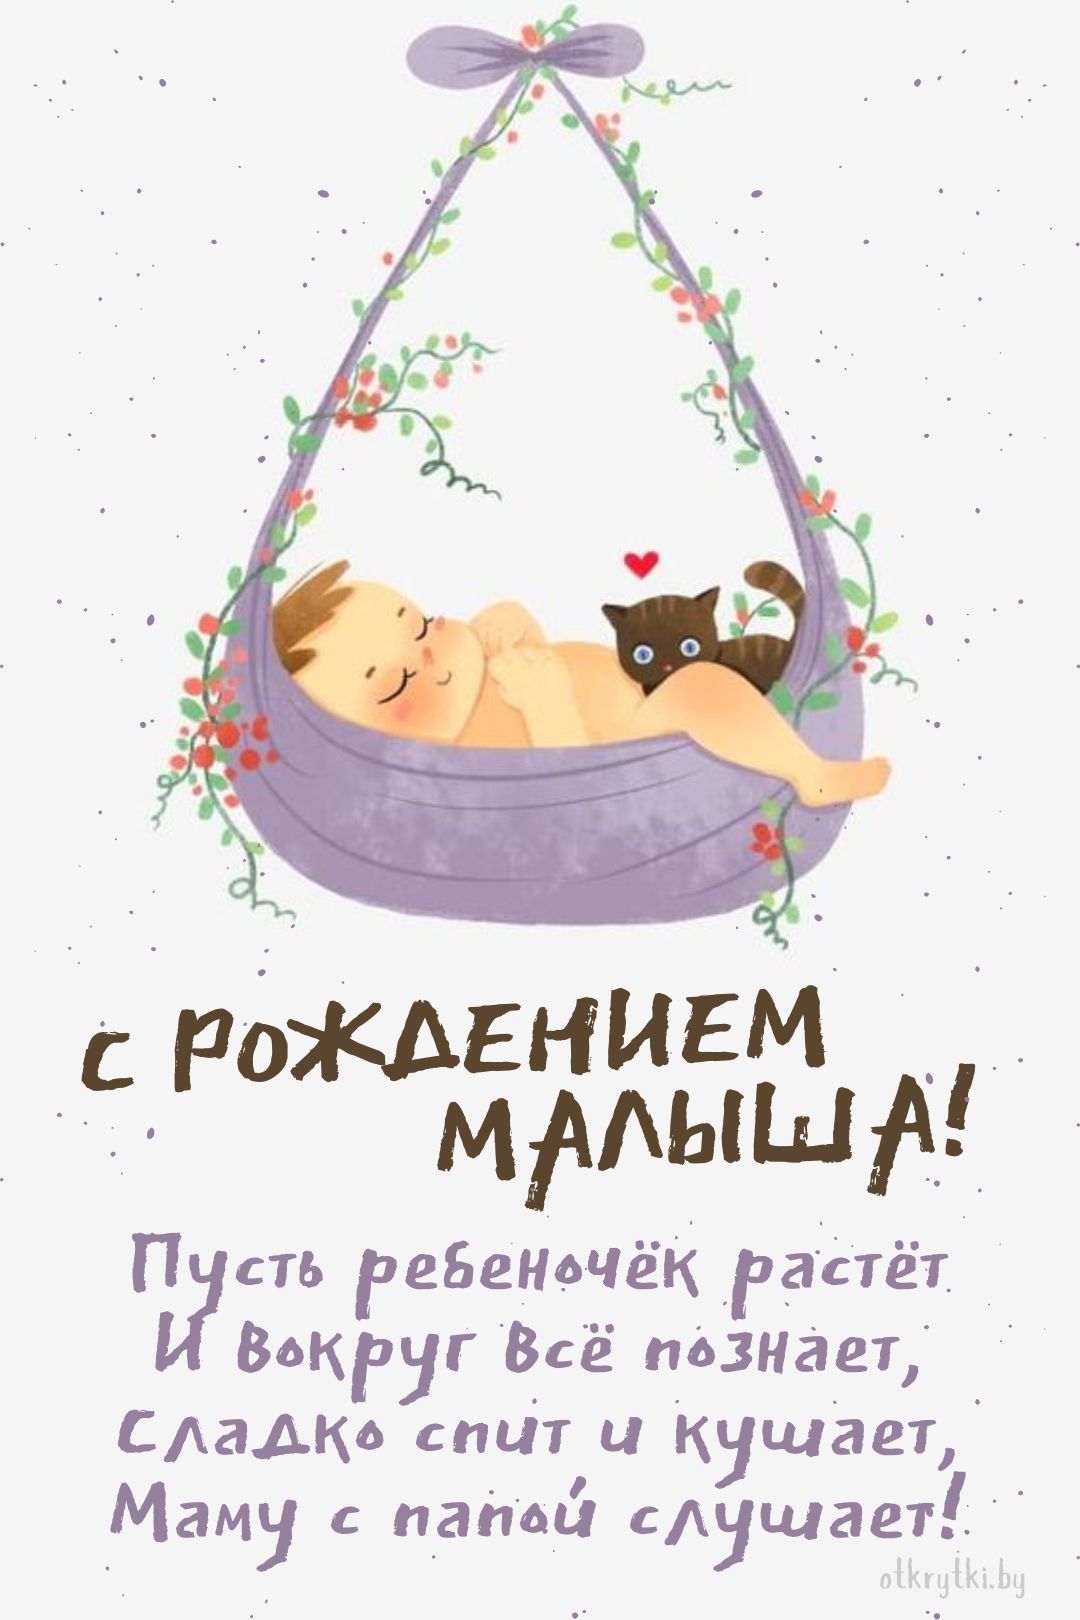 Прекрасная открытка с рождением малыша